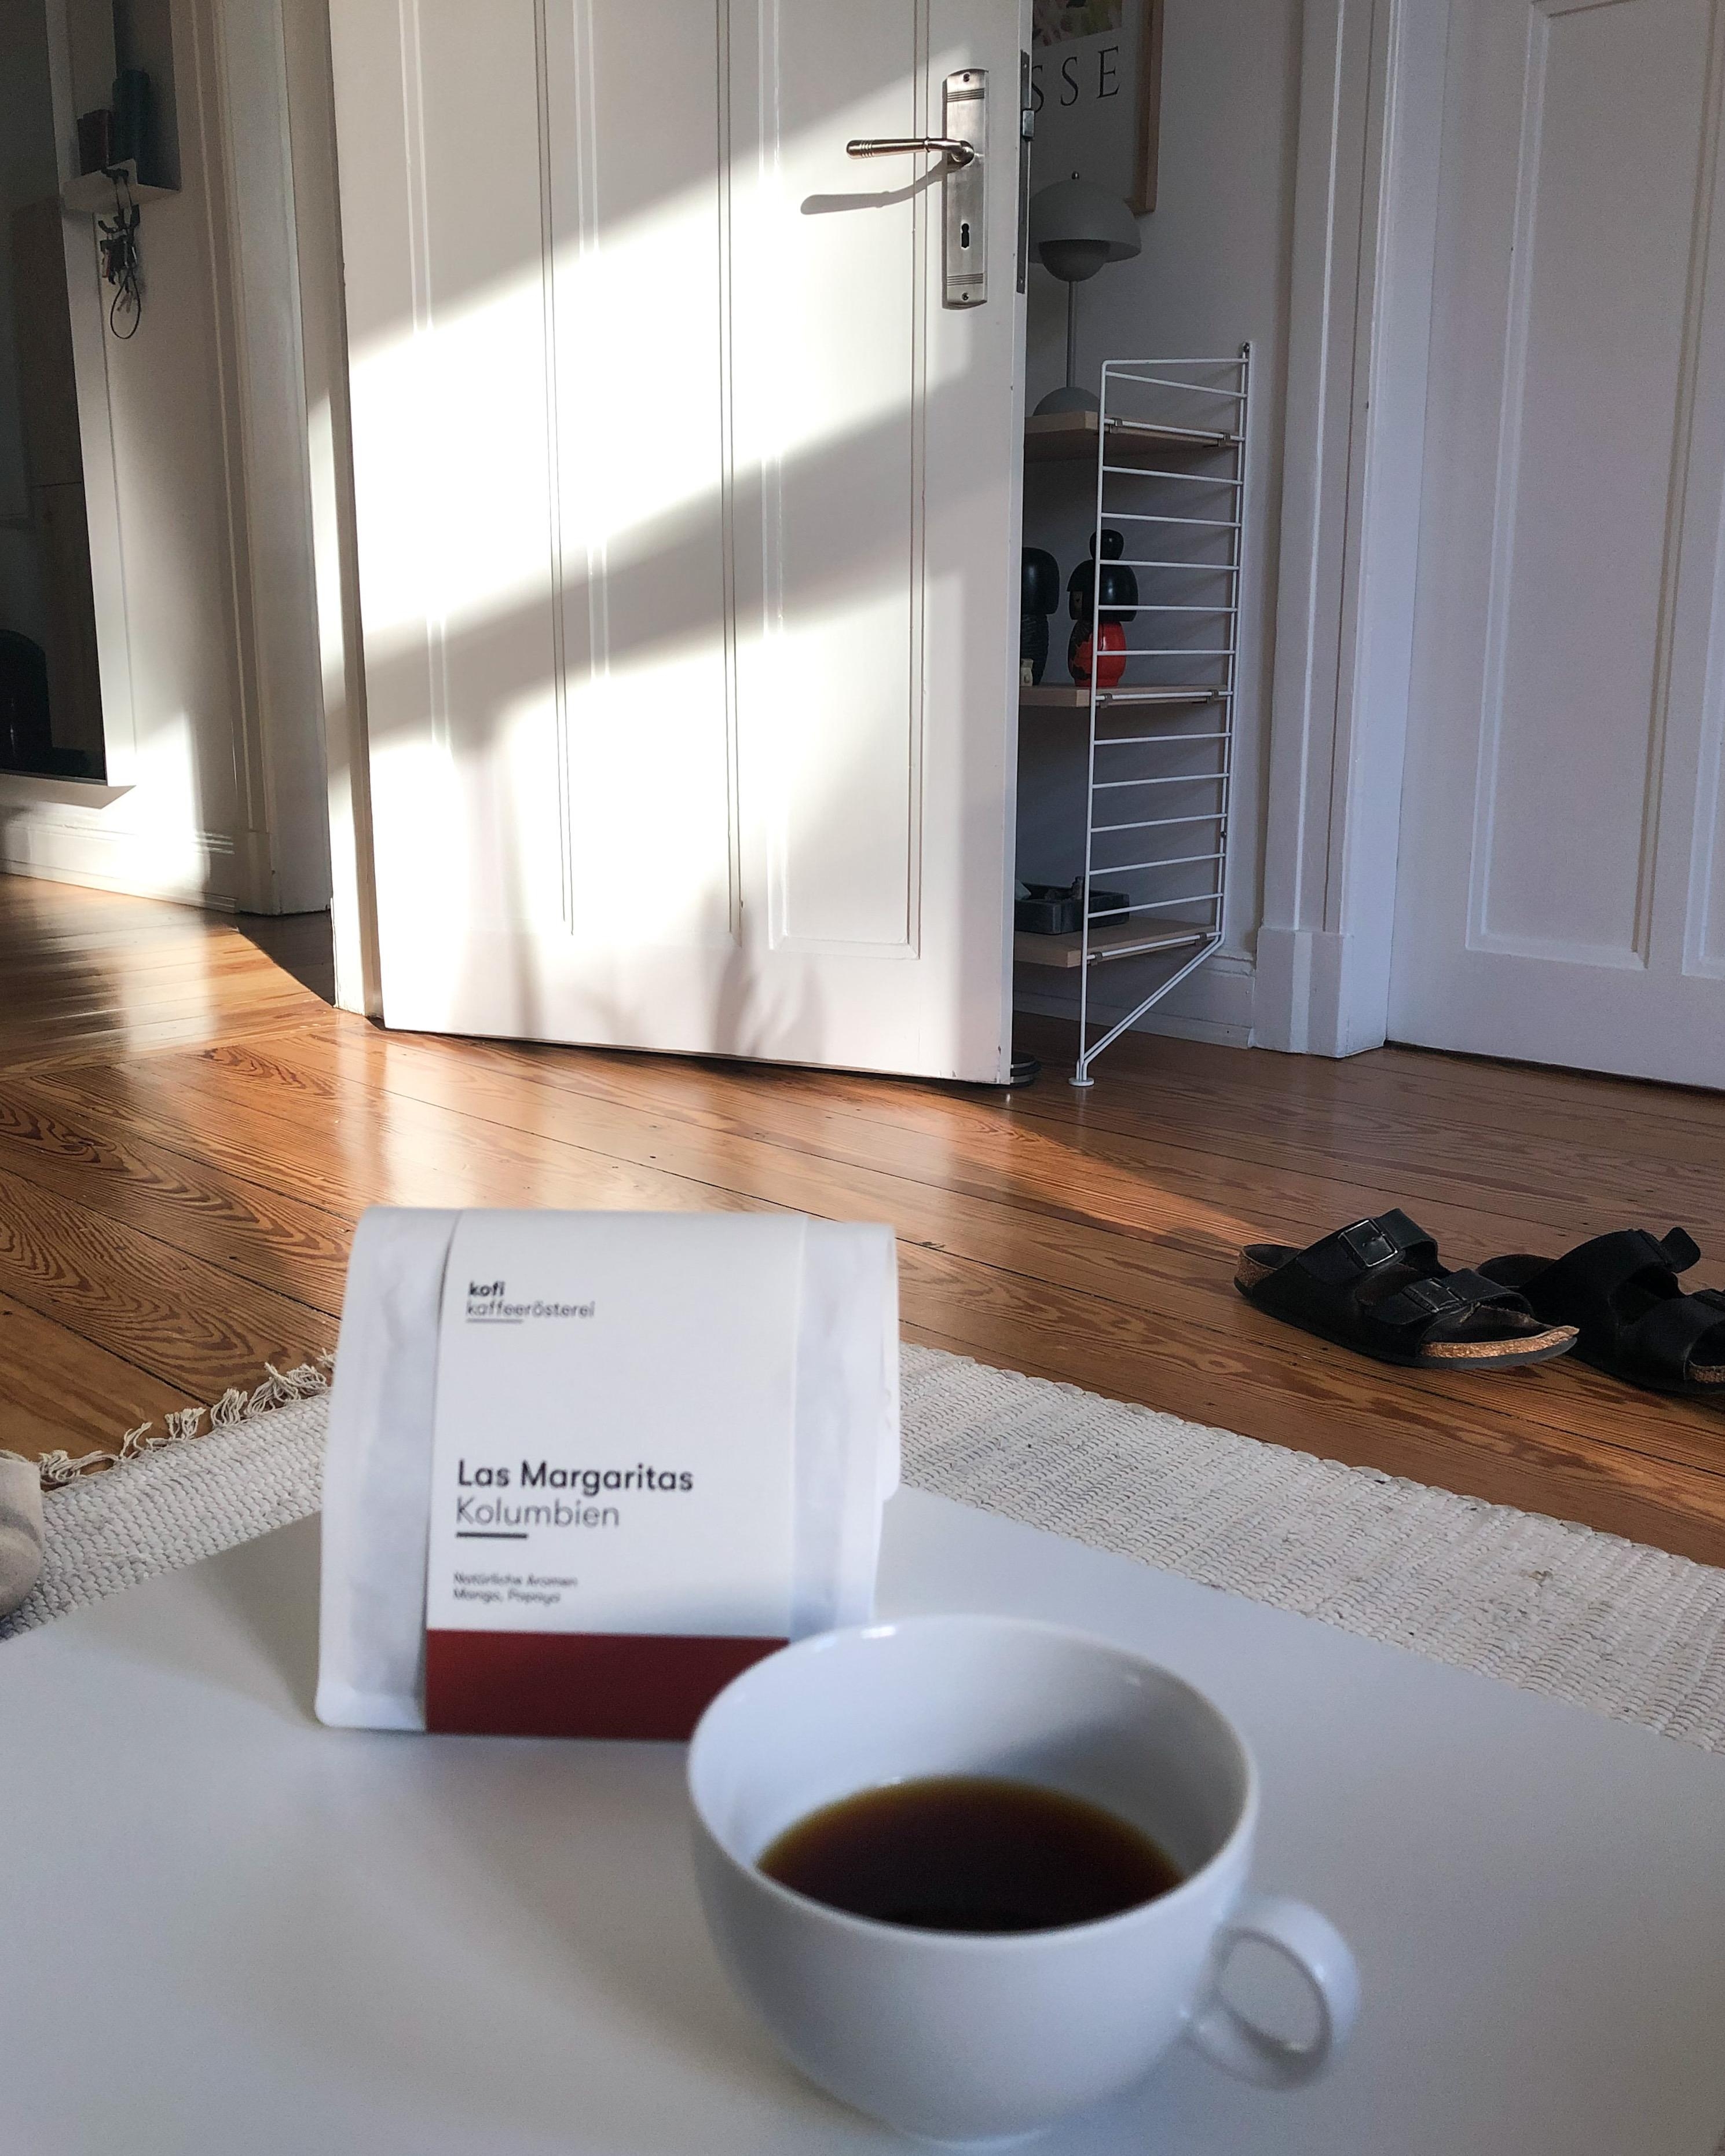 #sonntagskaffee #kaffeepause #thirdwavecoffee #lichtspiel #altbauliebe #whiteinterior #wohnzimmer #minimalismus